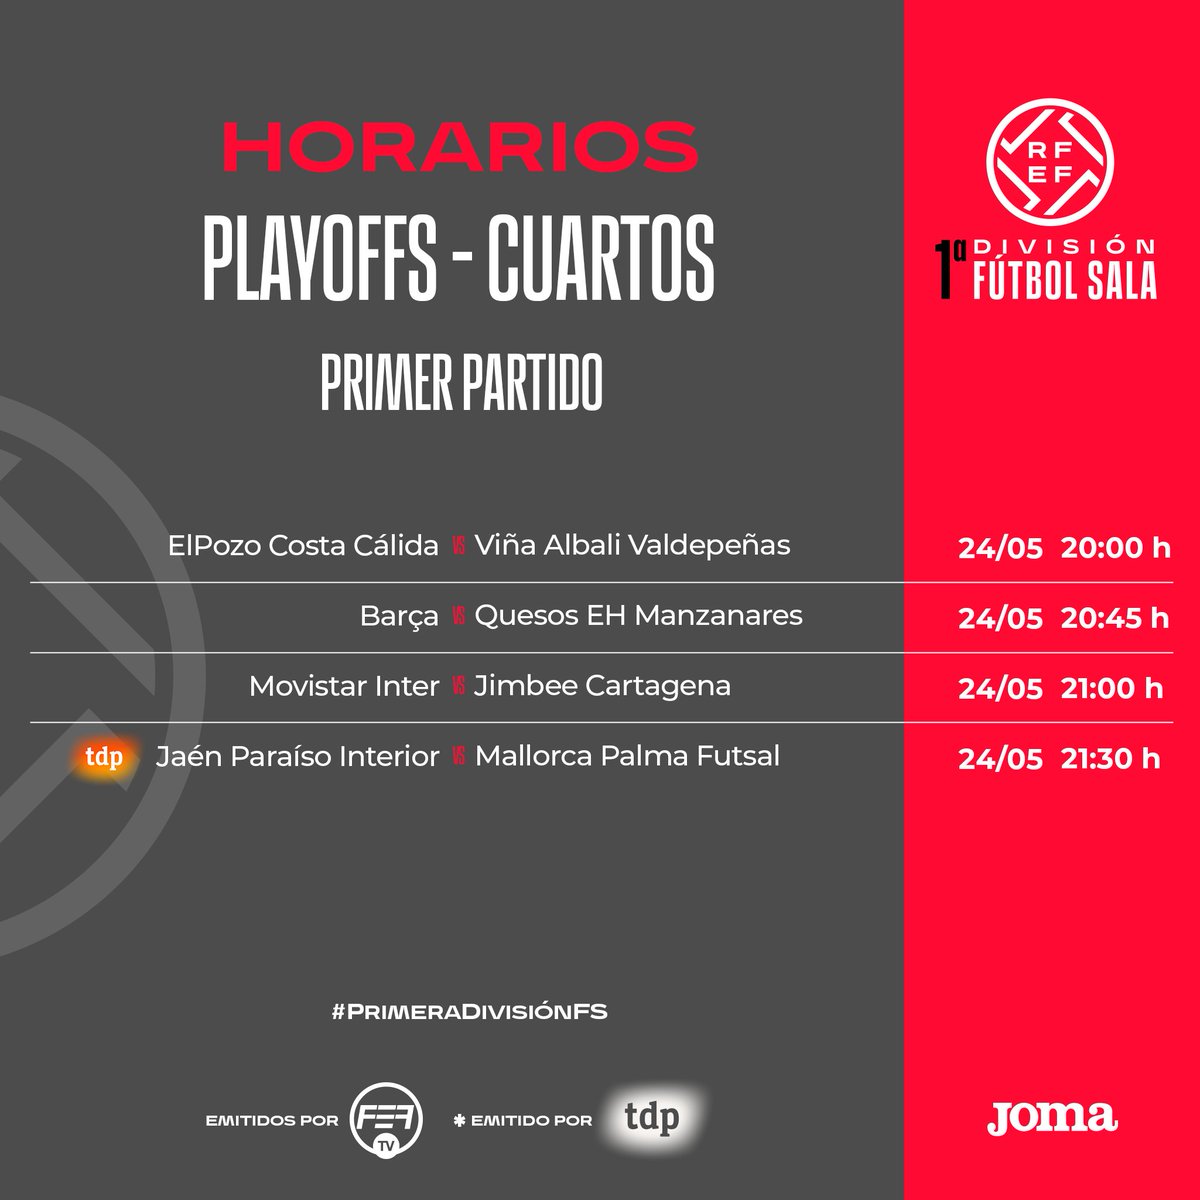 🗓️ 𝗛𝗢𝗥𝗔𝗥𝗜𝗢𝗦 | ⚽️ Estos son los horarios de los primeros partidos de los cuartos de final en los playoffs de #PrimeraDivisiónFS. 📺 @JaenFS 🆚 @PalmaFutsal se podrá seguir en directo a través de @teledeporte. 👉 El resto de partidos en @fef_tv.